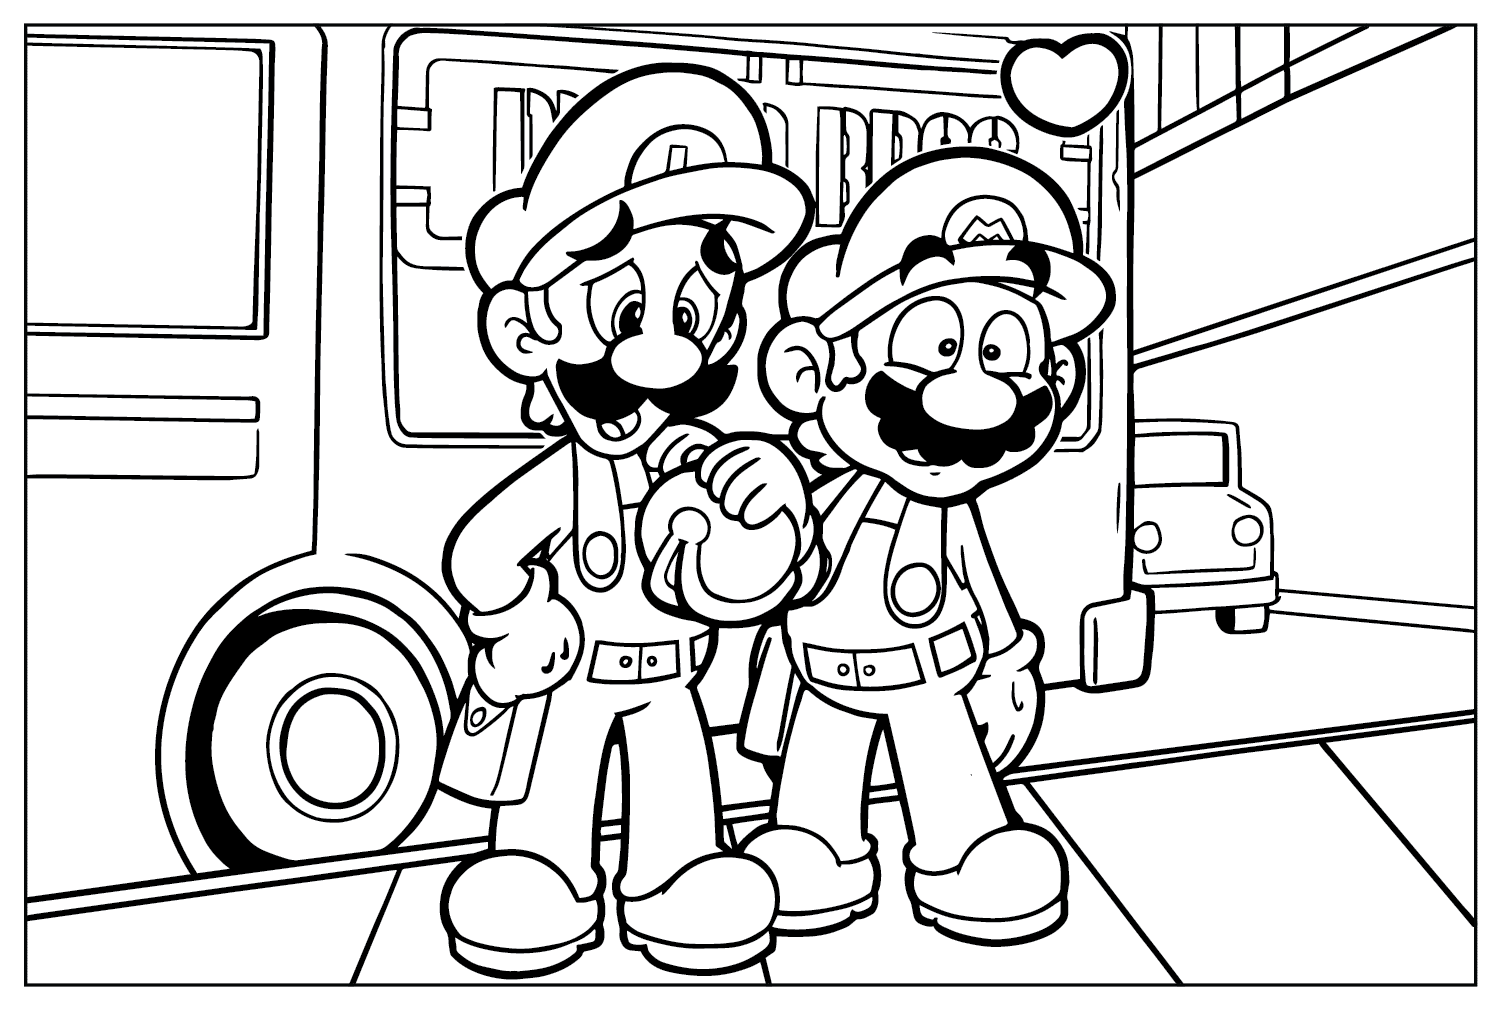 Disegni da colorare del film Super Mario Bros. per bambini dal film Super Mario Bros.